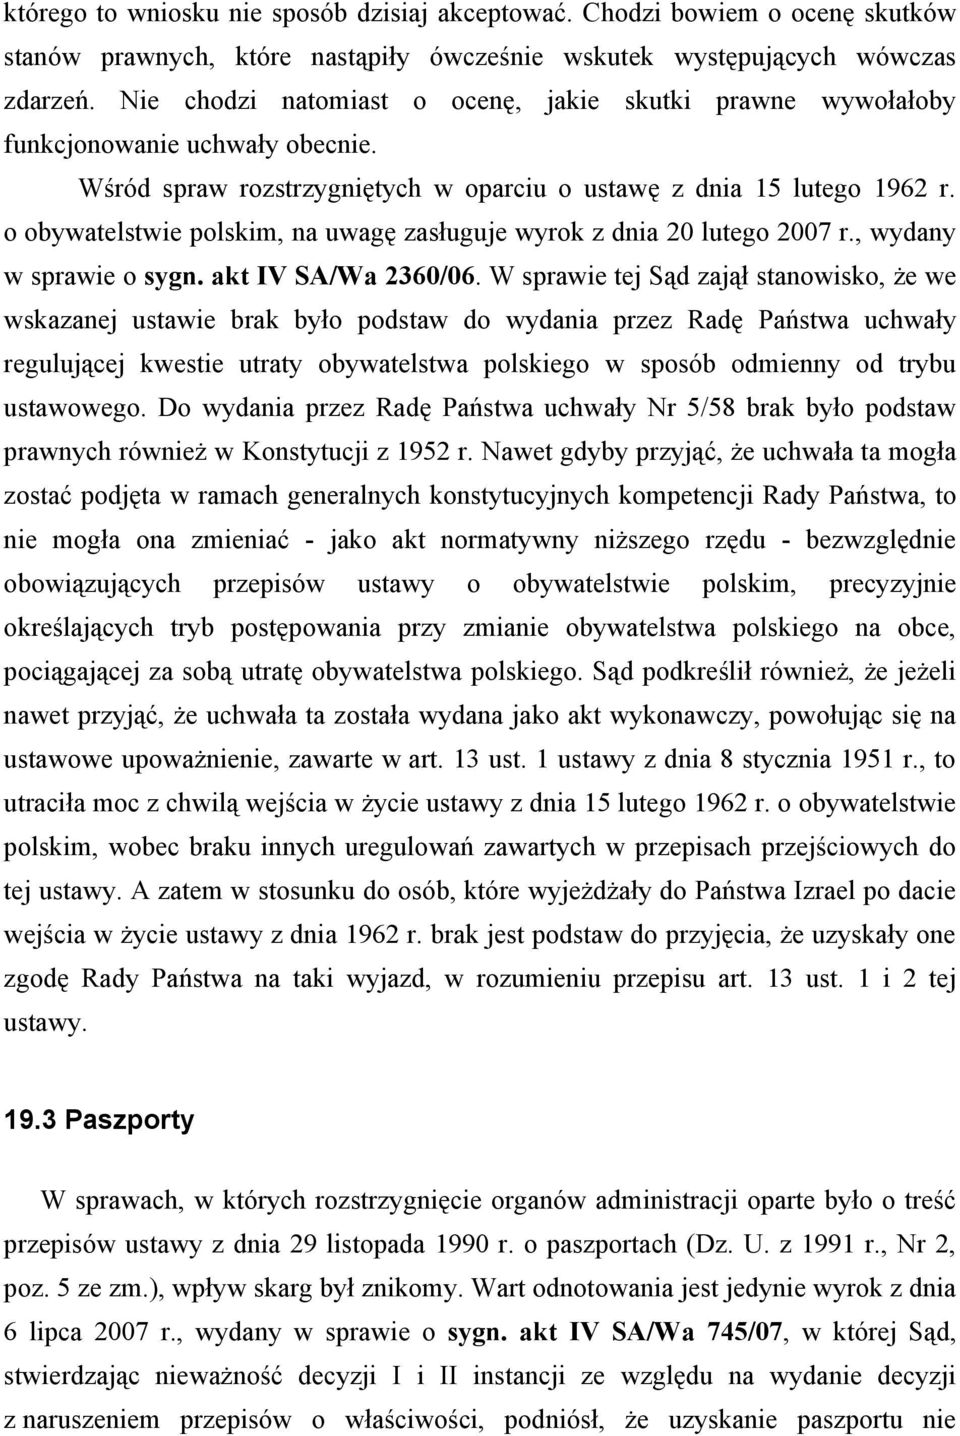 o obywatelstwie polskim, na uwagę zasługuje wyrok z dnia 20 lutego 2007 r., wydany w sprawie o sygn. akt IV SA/Wa 2360/06.